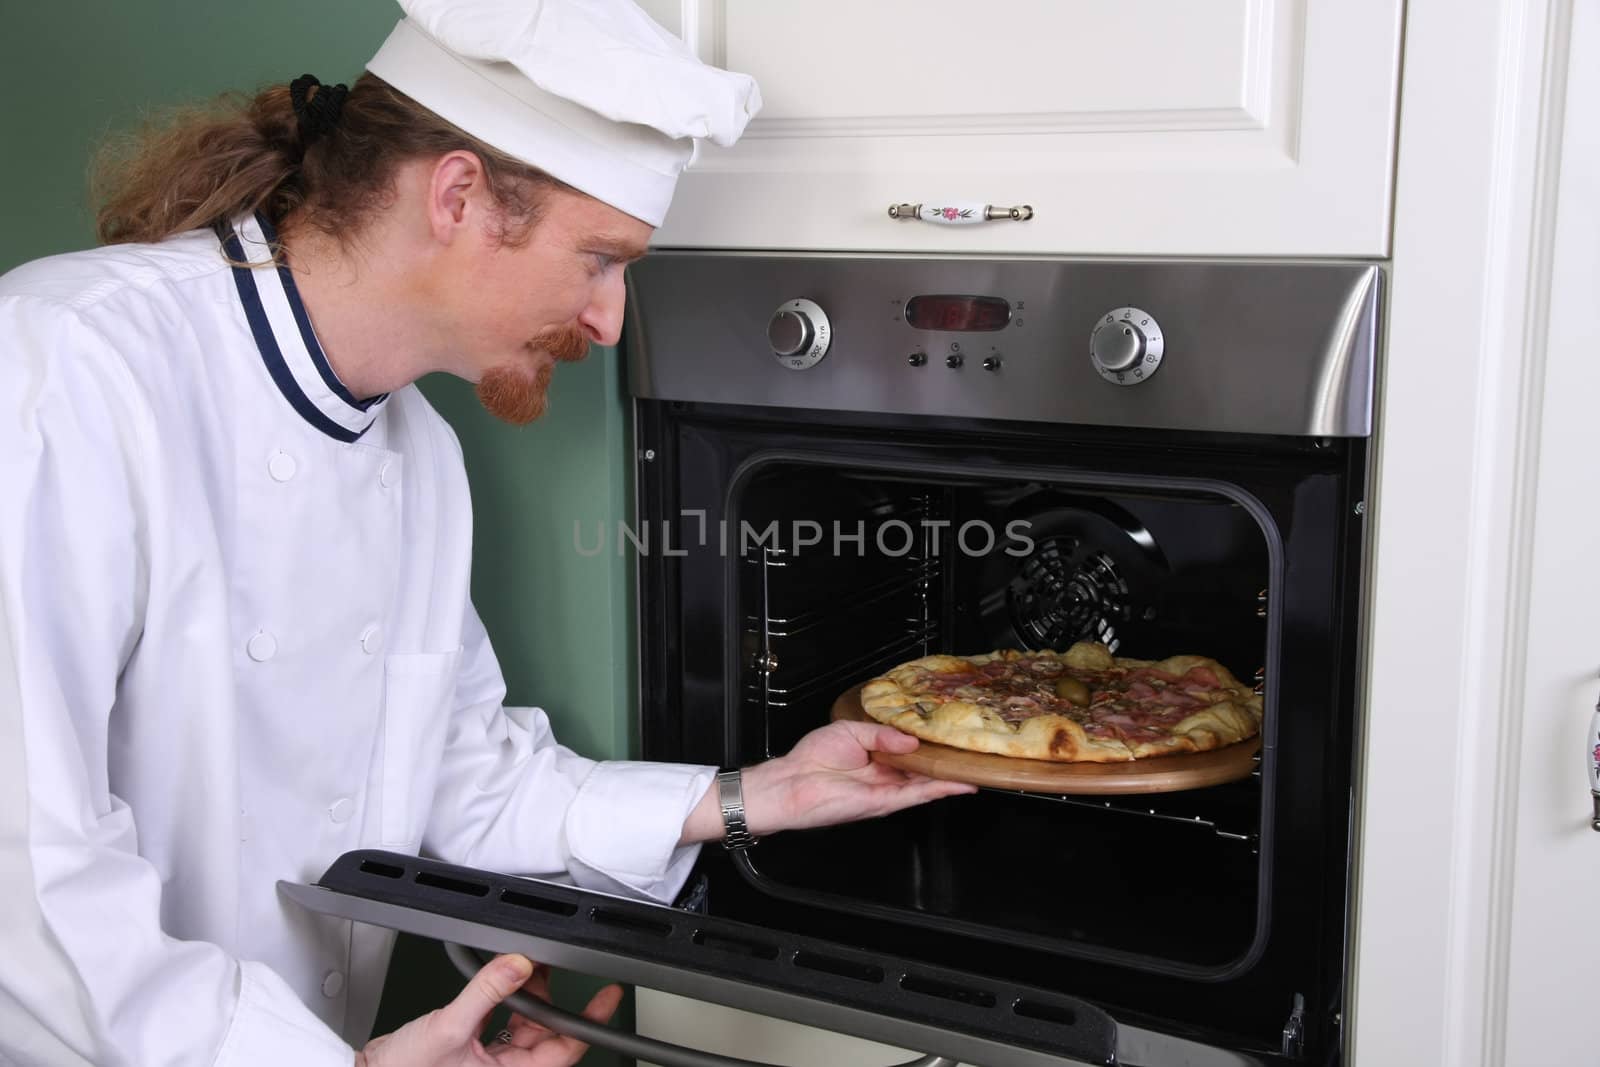 Young chef prepared italian pizza in kitchen by vladacanon